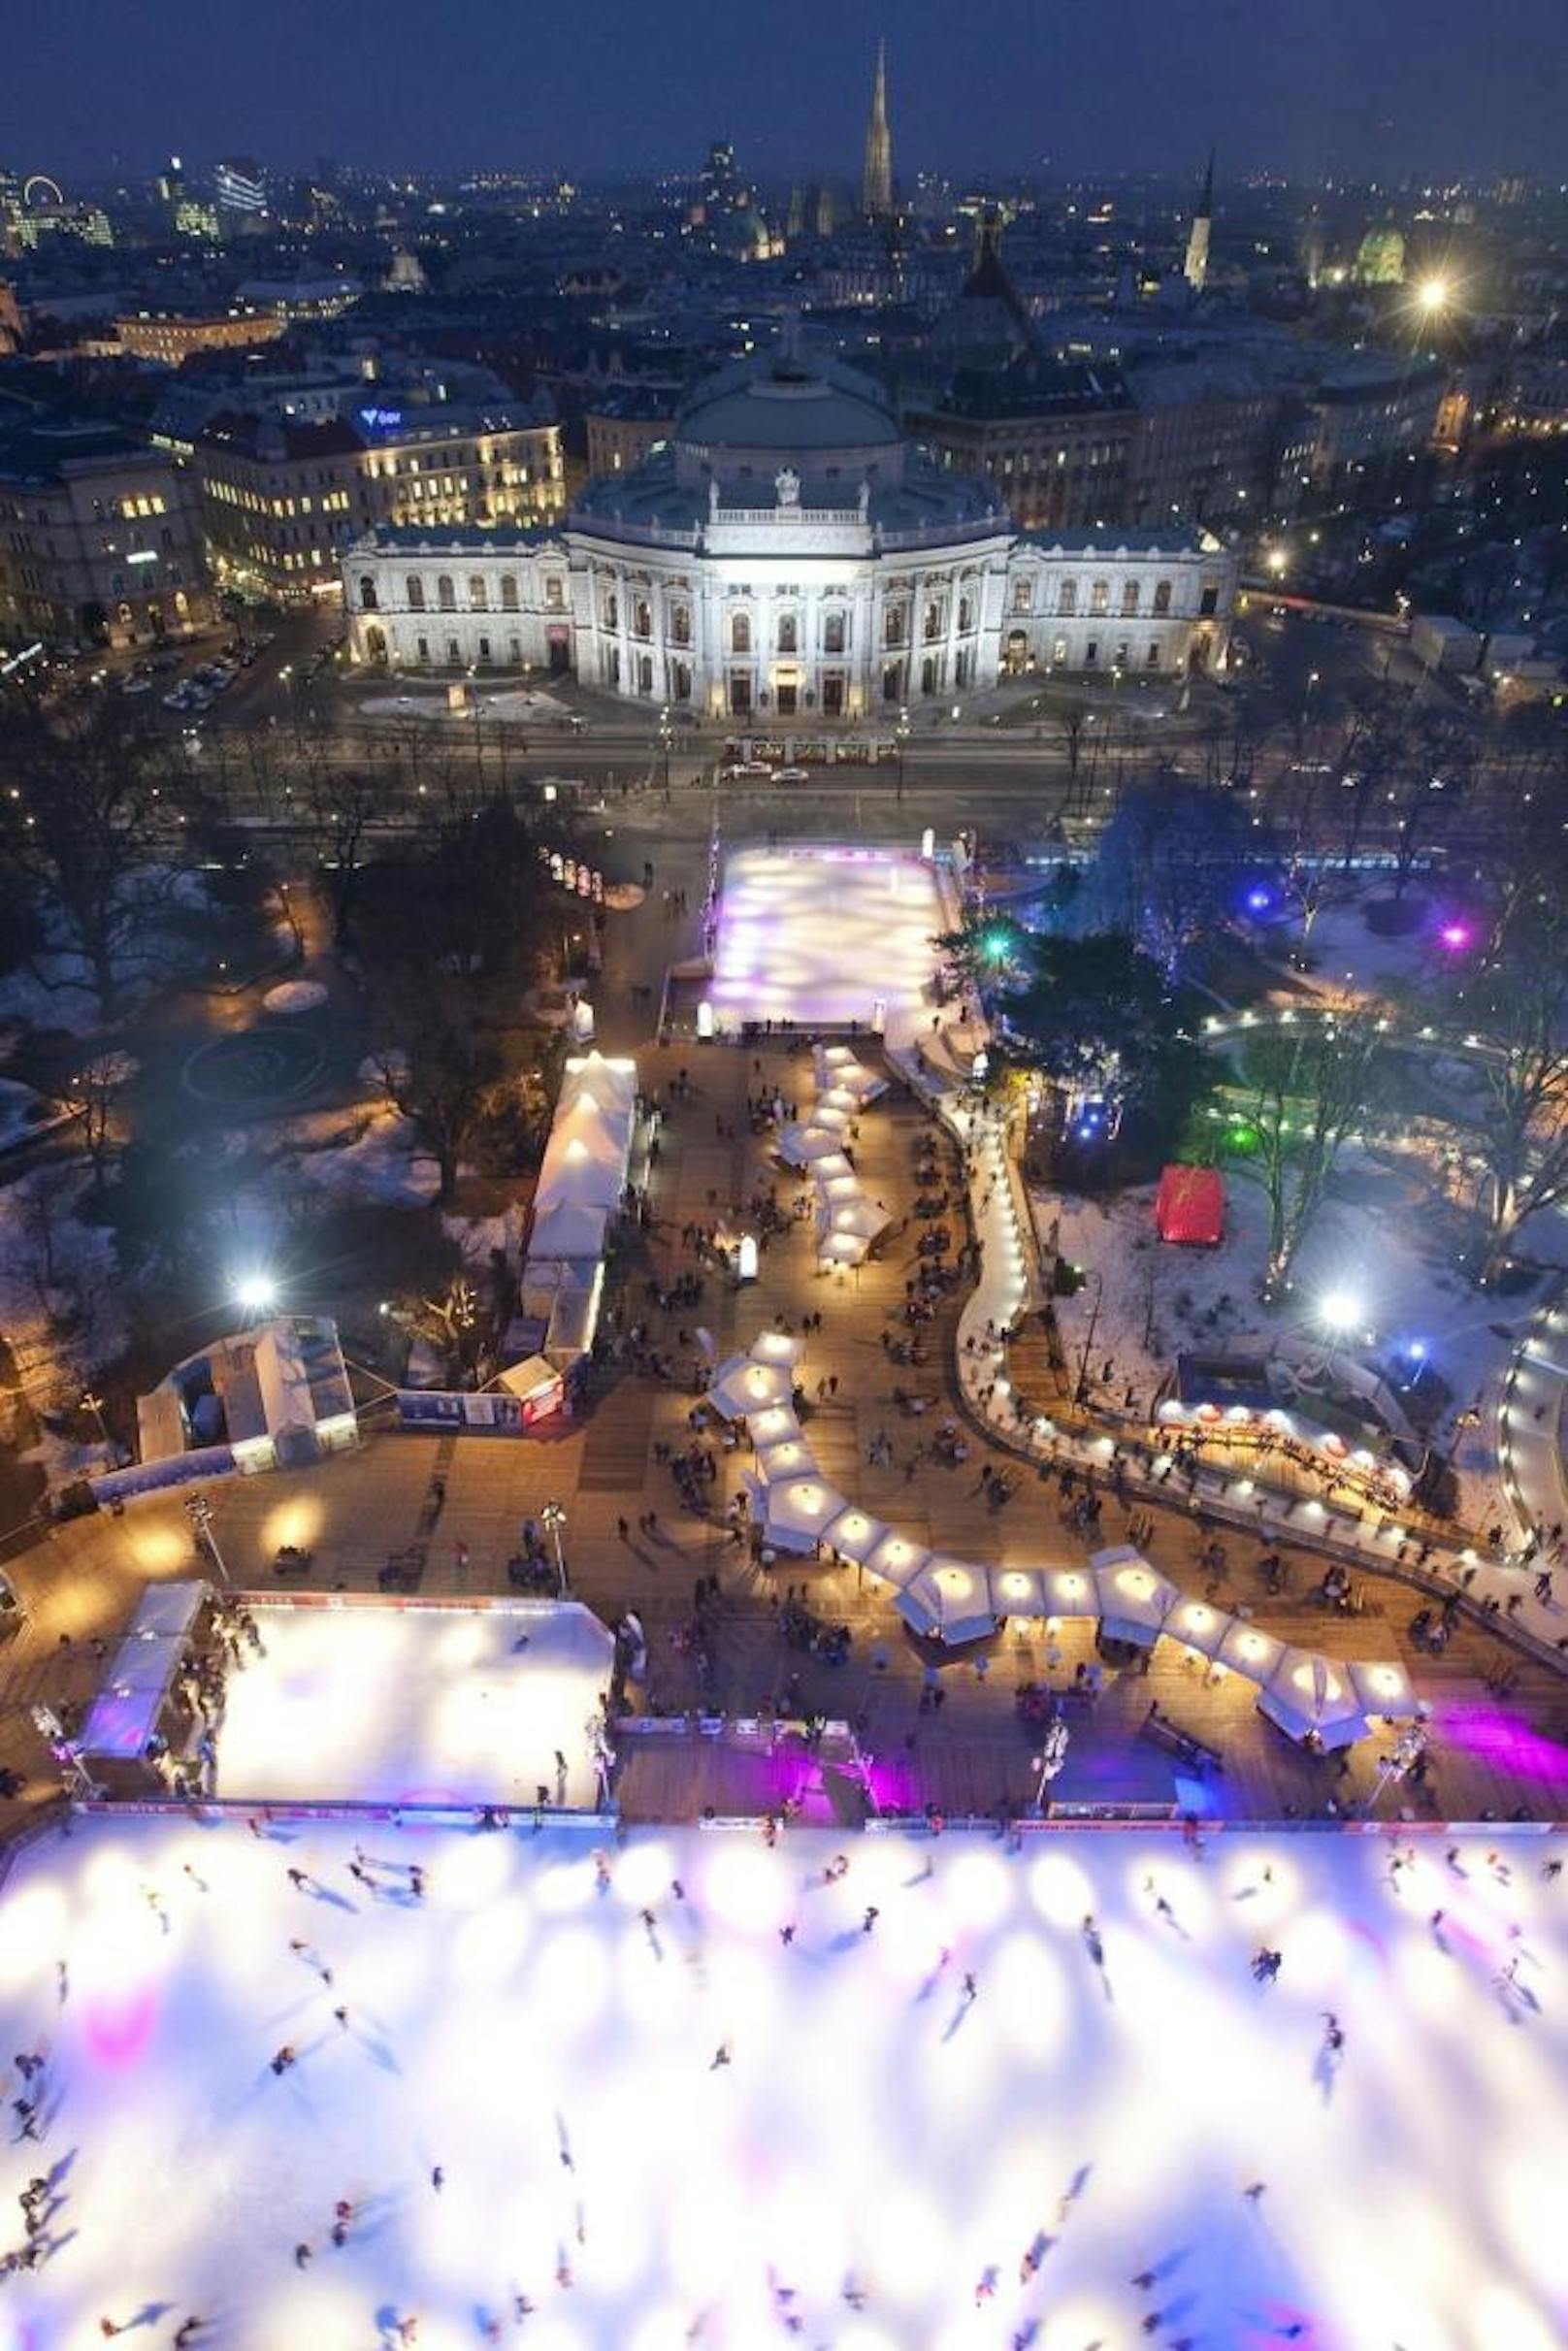 Von 20. Jänner bis inklusive 4. März 2018 von 10 bis 22 Uhr hat der Wiener Eistraum am Rathausplatz wieder geöffnet. Am 19. Jänner ab 17 Uhr gibts zur Eröffnung Gratis-Eislaufen.
Hier sehen Sie Impressionen der vergangenen Jahre.